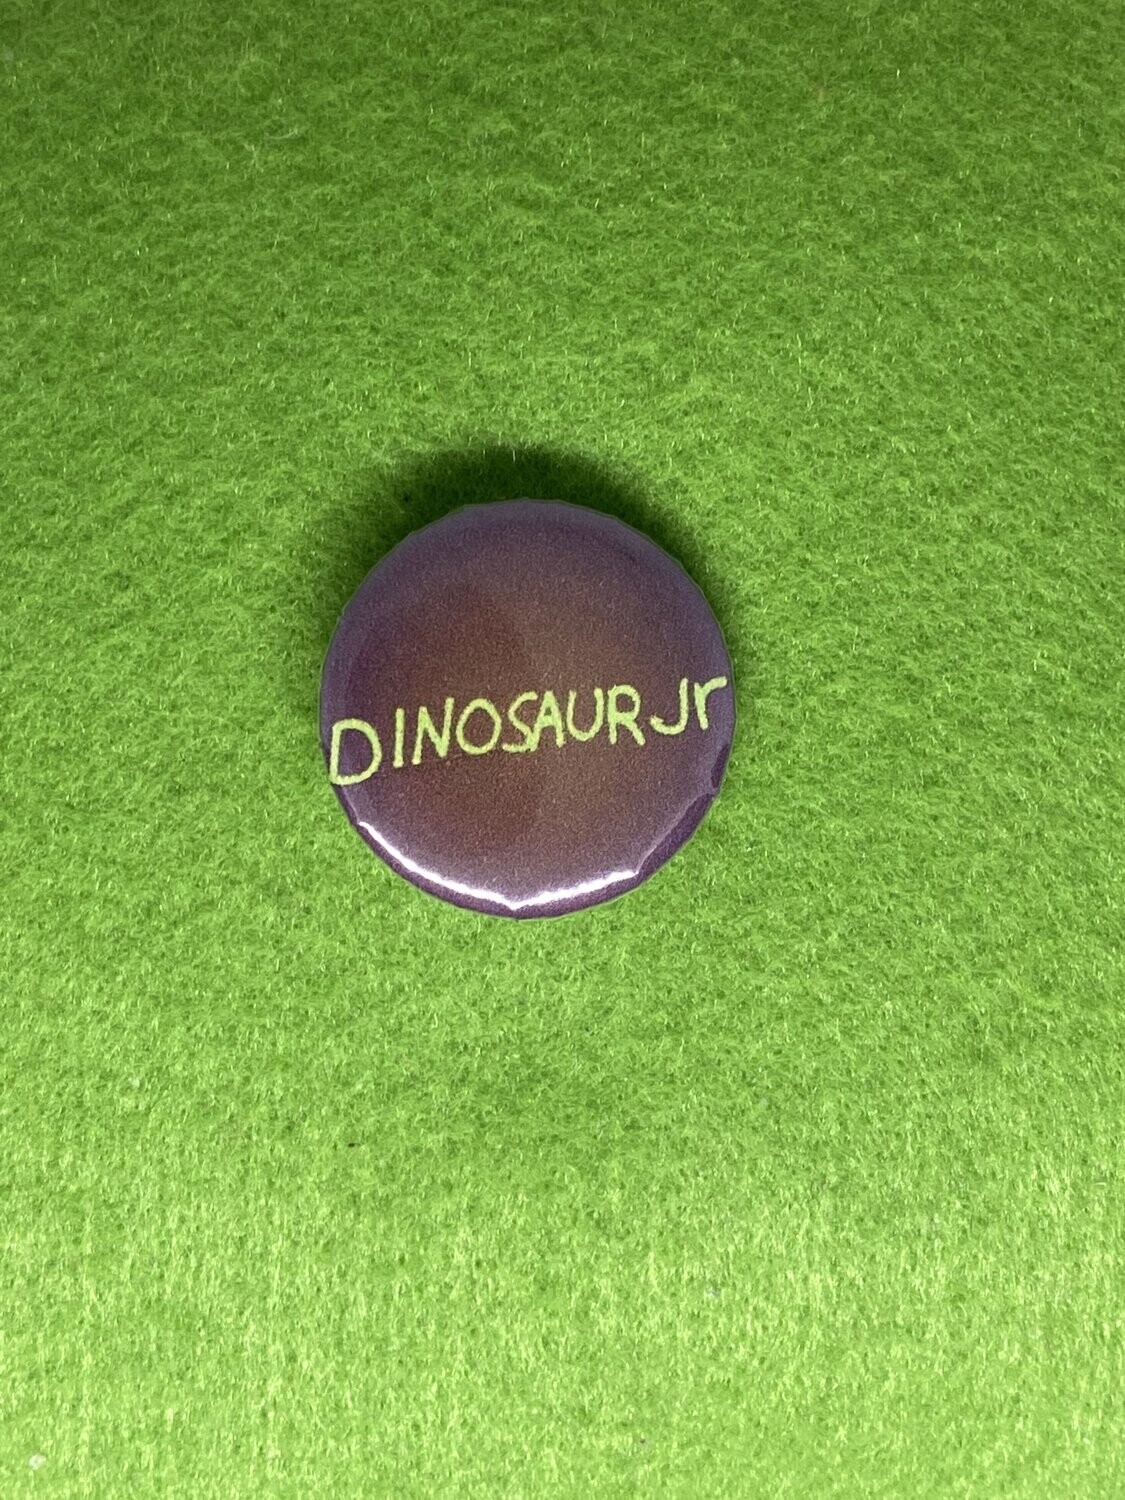 Dinosaur Jr Badge